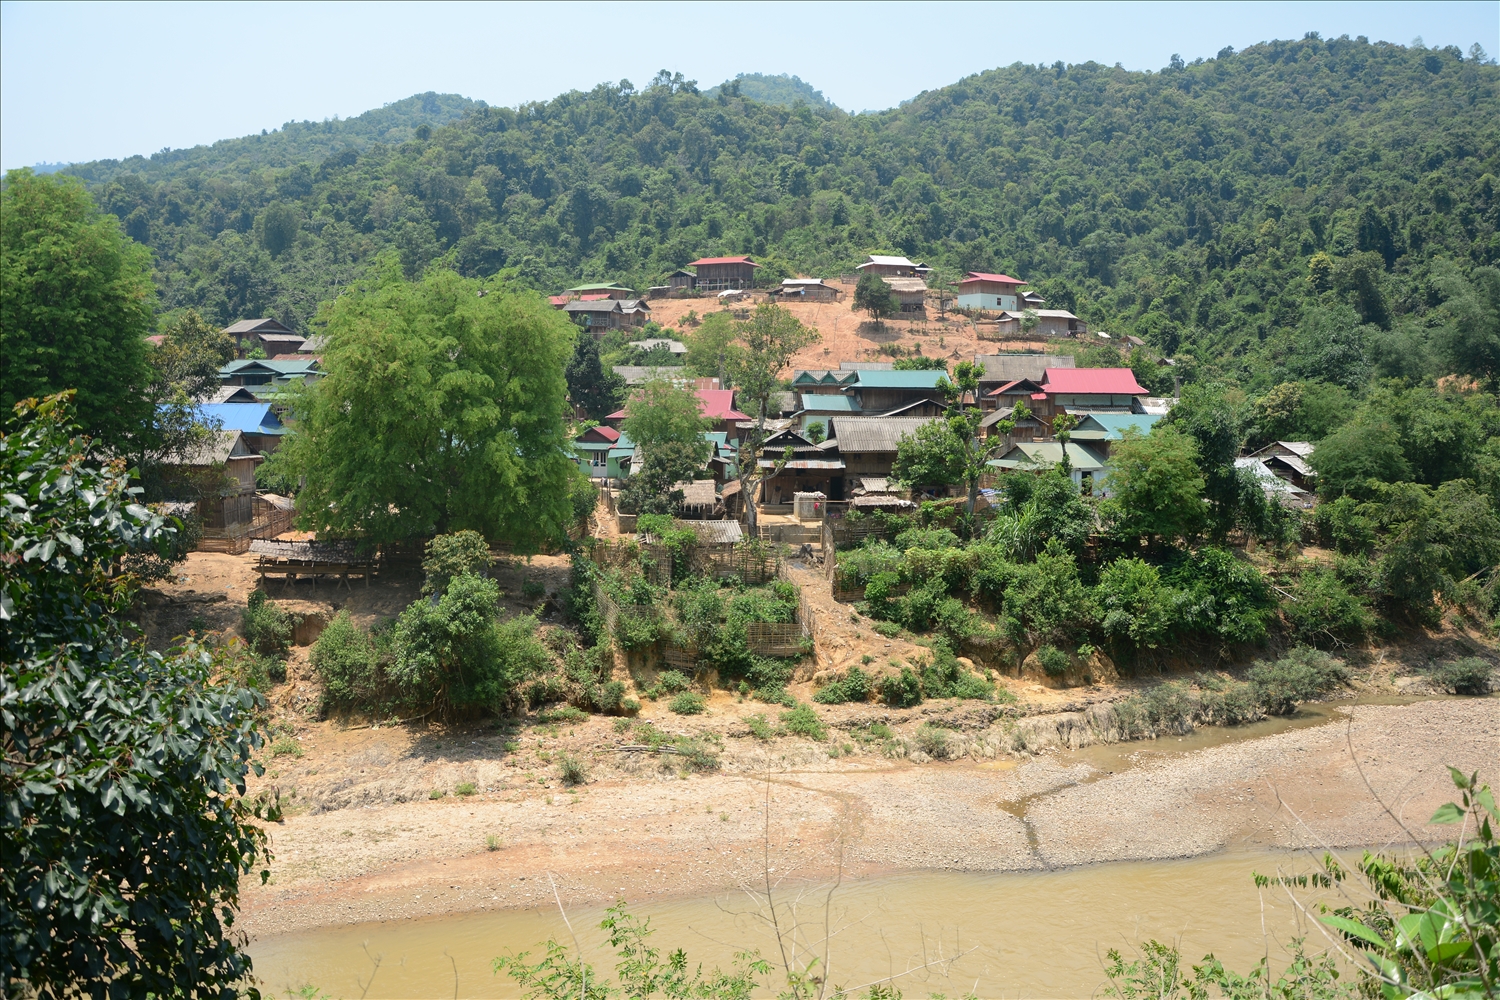  Chính sách dân tộc thay đổi diện mạo vùng DTTS ở Điện Biên